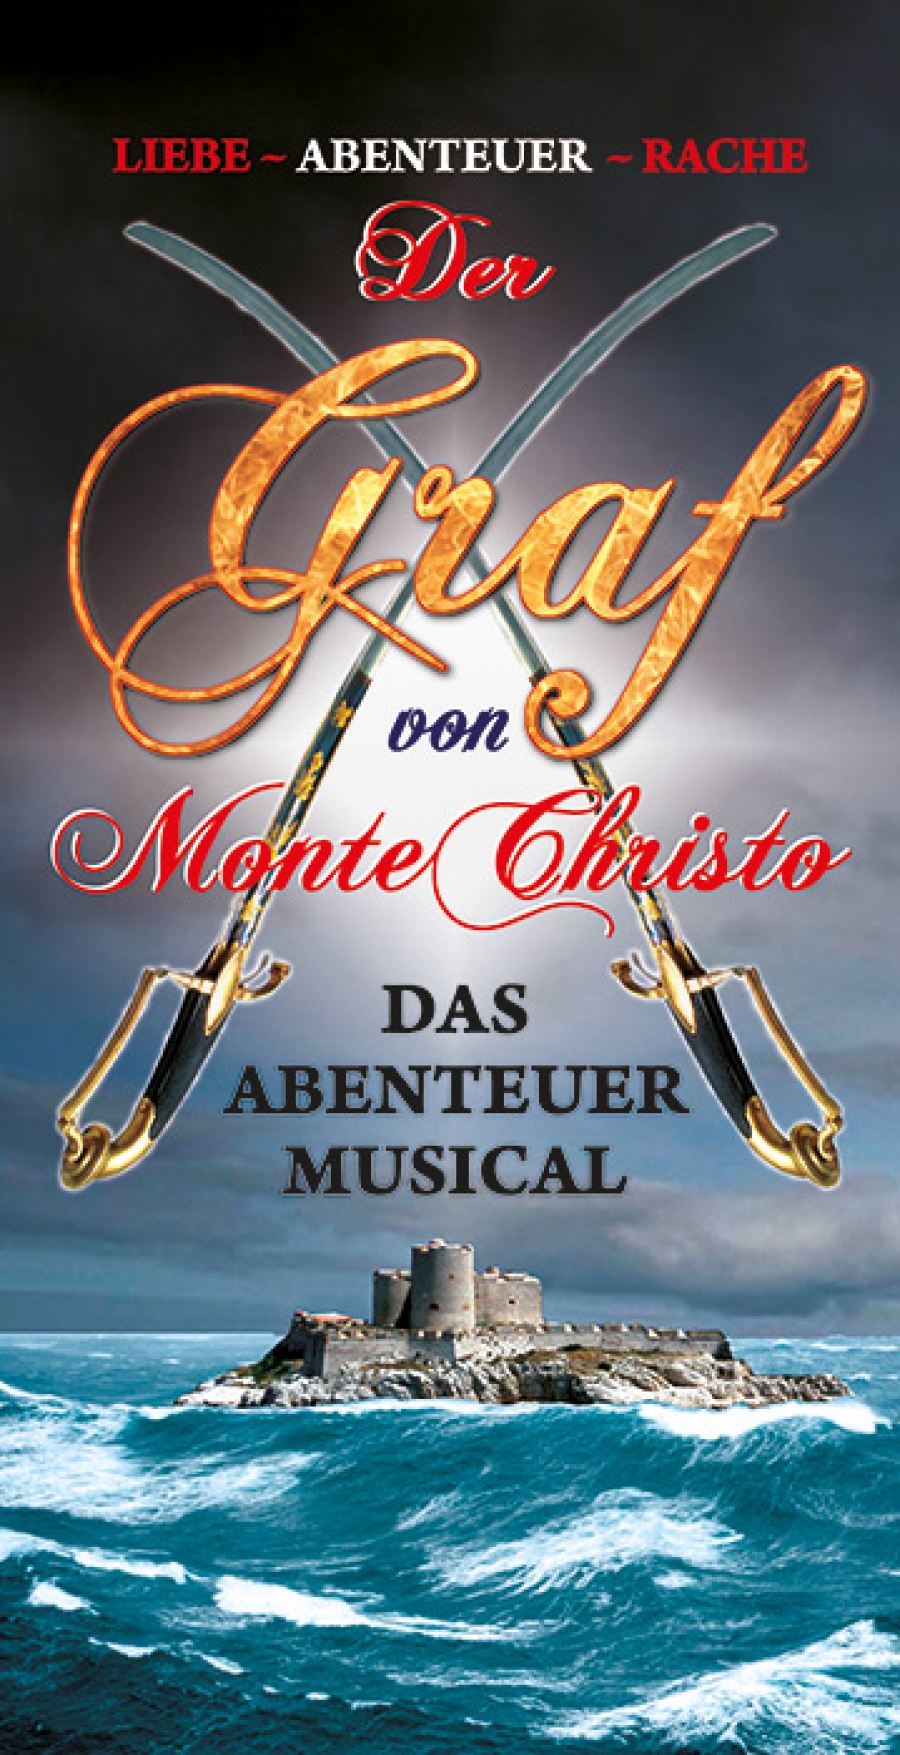 ac3c82d798b804f58491d821c475780a_XL "Der Graf von Monte Christo"-Cast für Tecklenburg steht fest - musicalradio.de | Musicals kostenlos im Radio